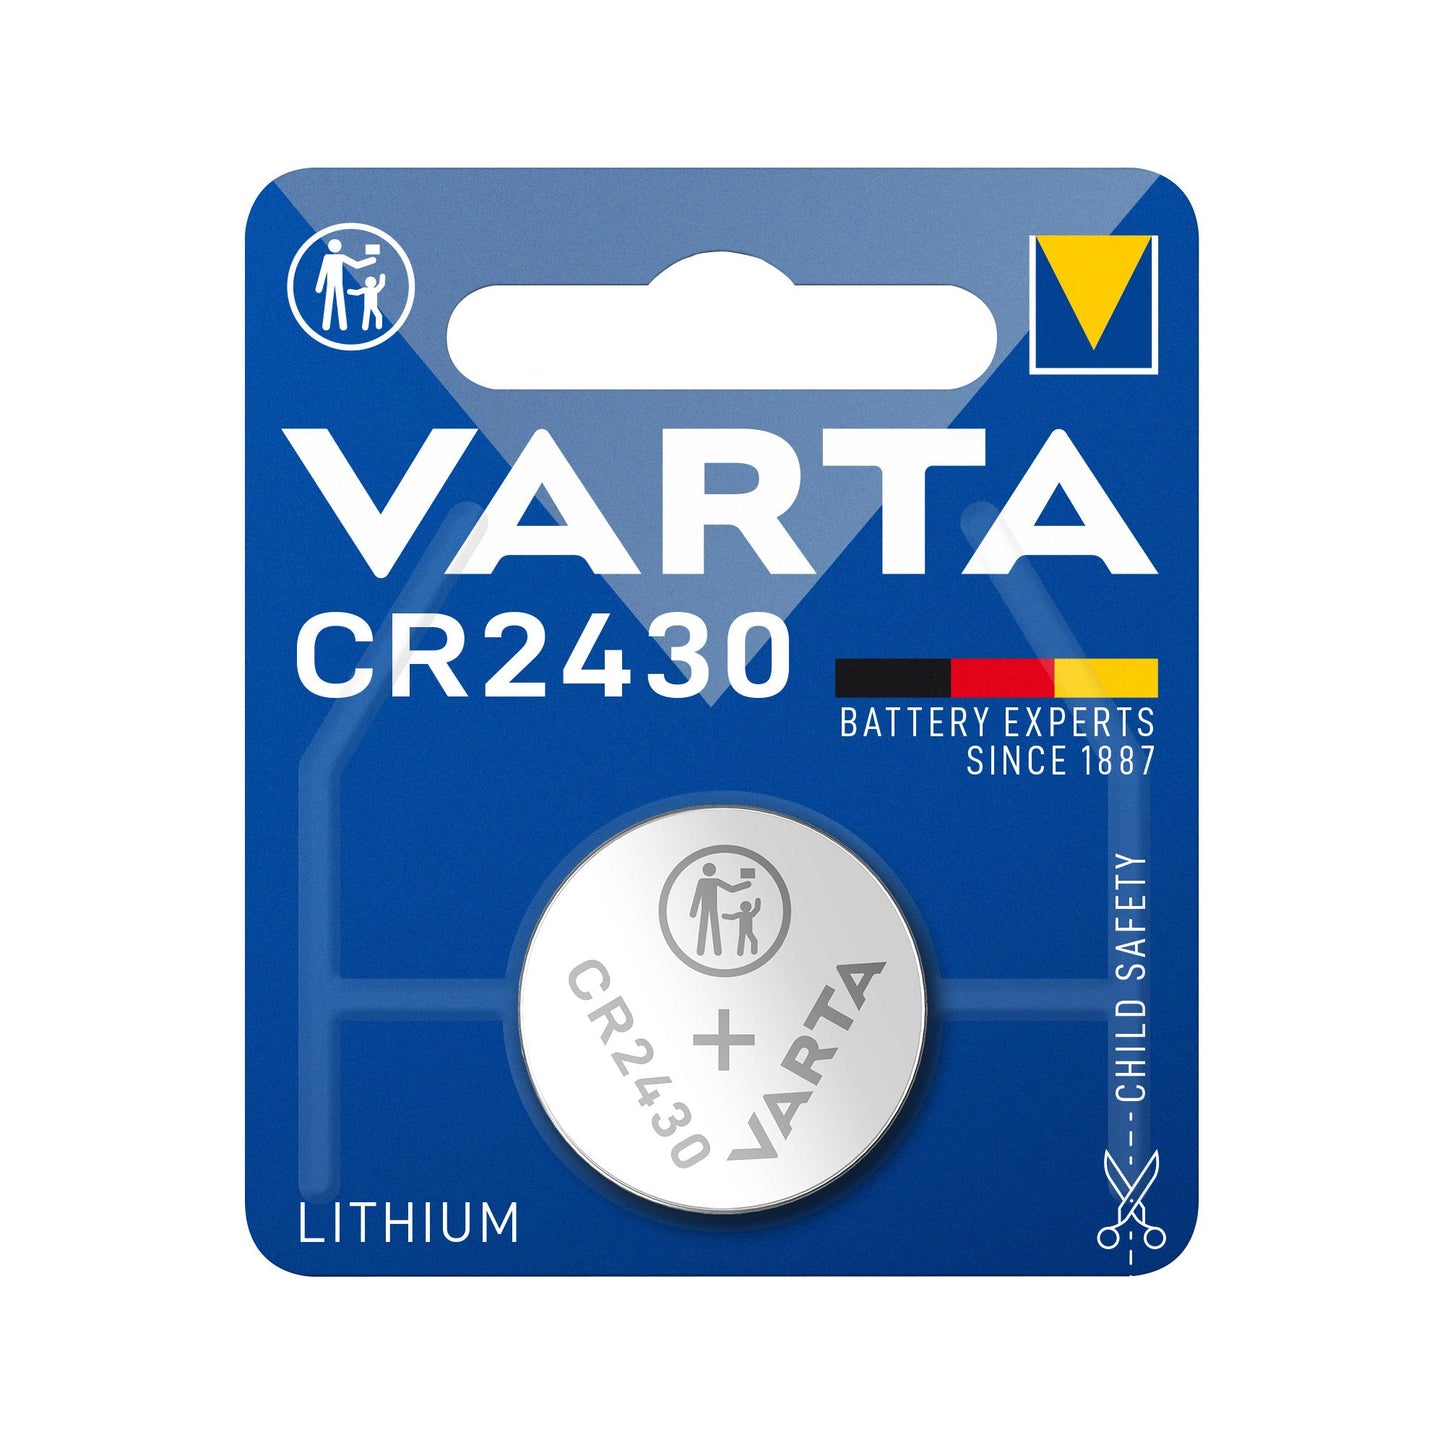 VARTA Batterie Lithium Knopfzelle CR2430, 3V Electronics, Retail Blister (1-Pack)